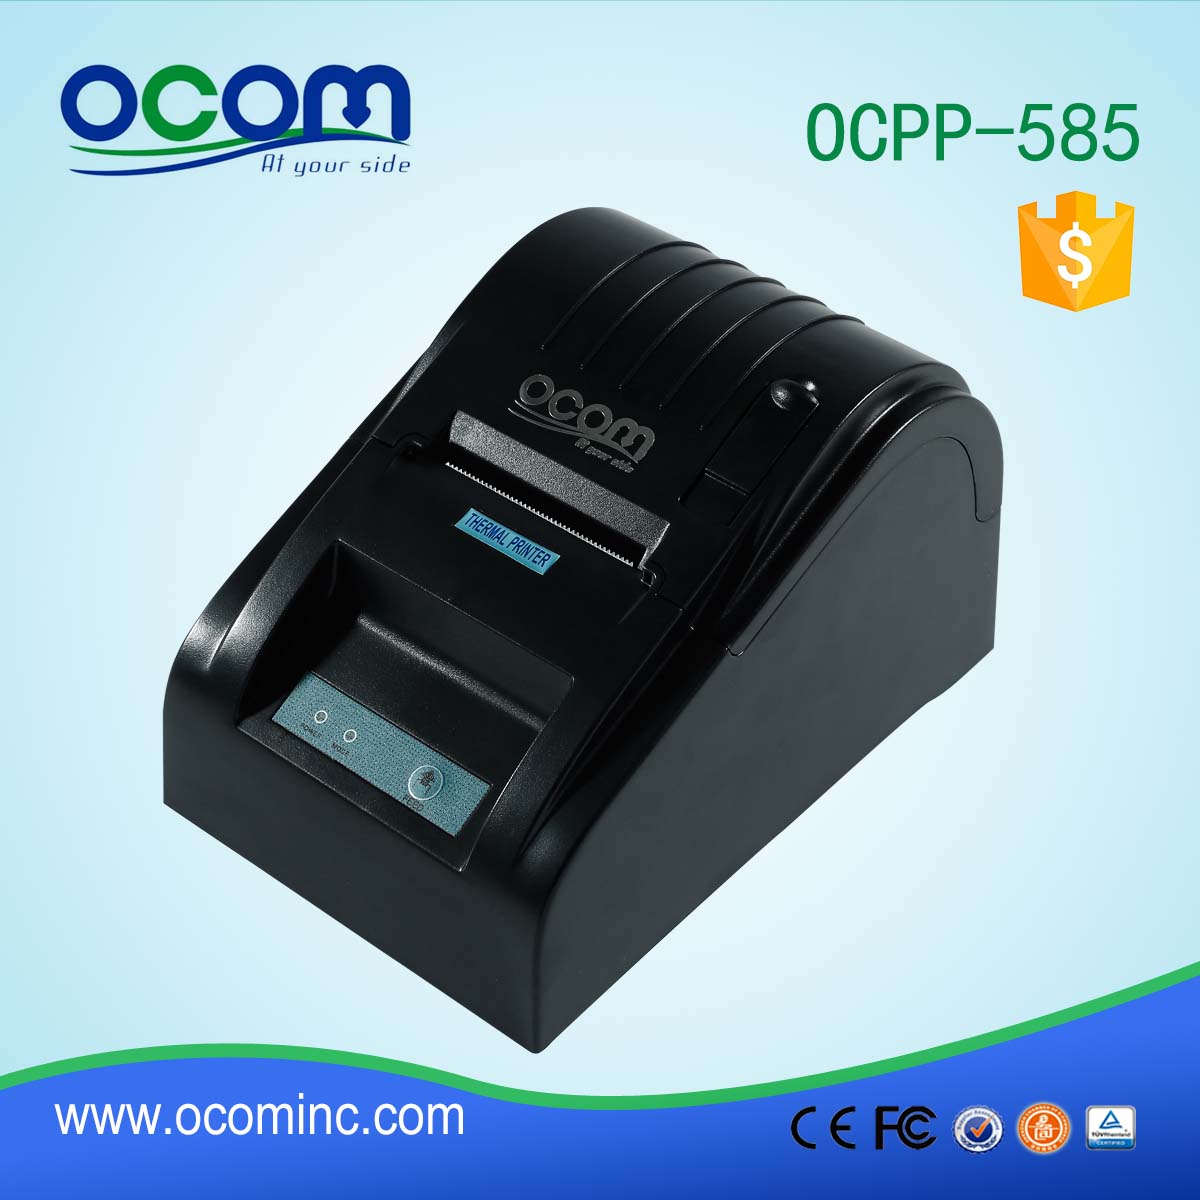 OCPP-585 58mm热收据打印机蓝牙可选